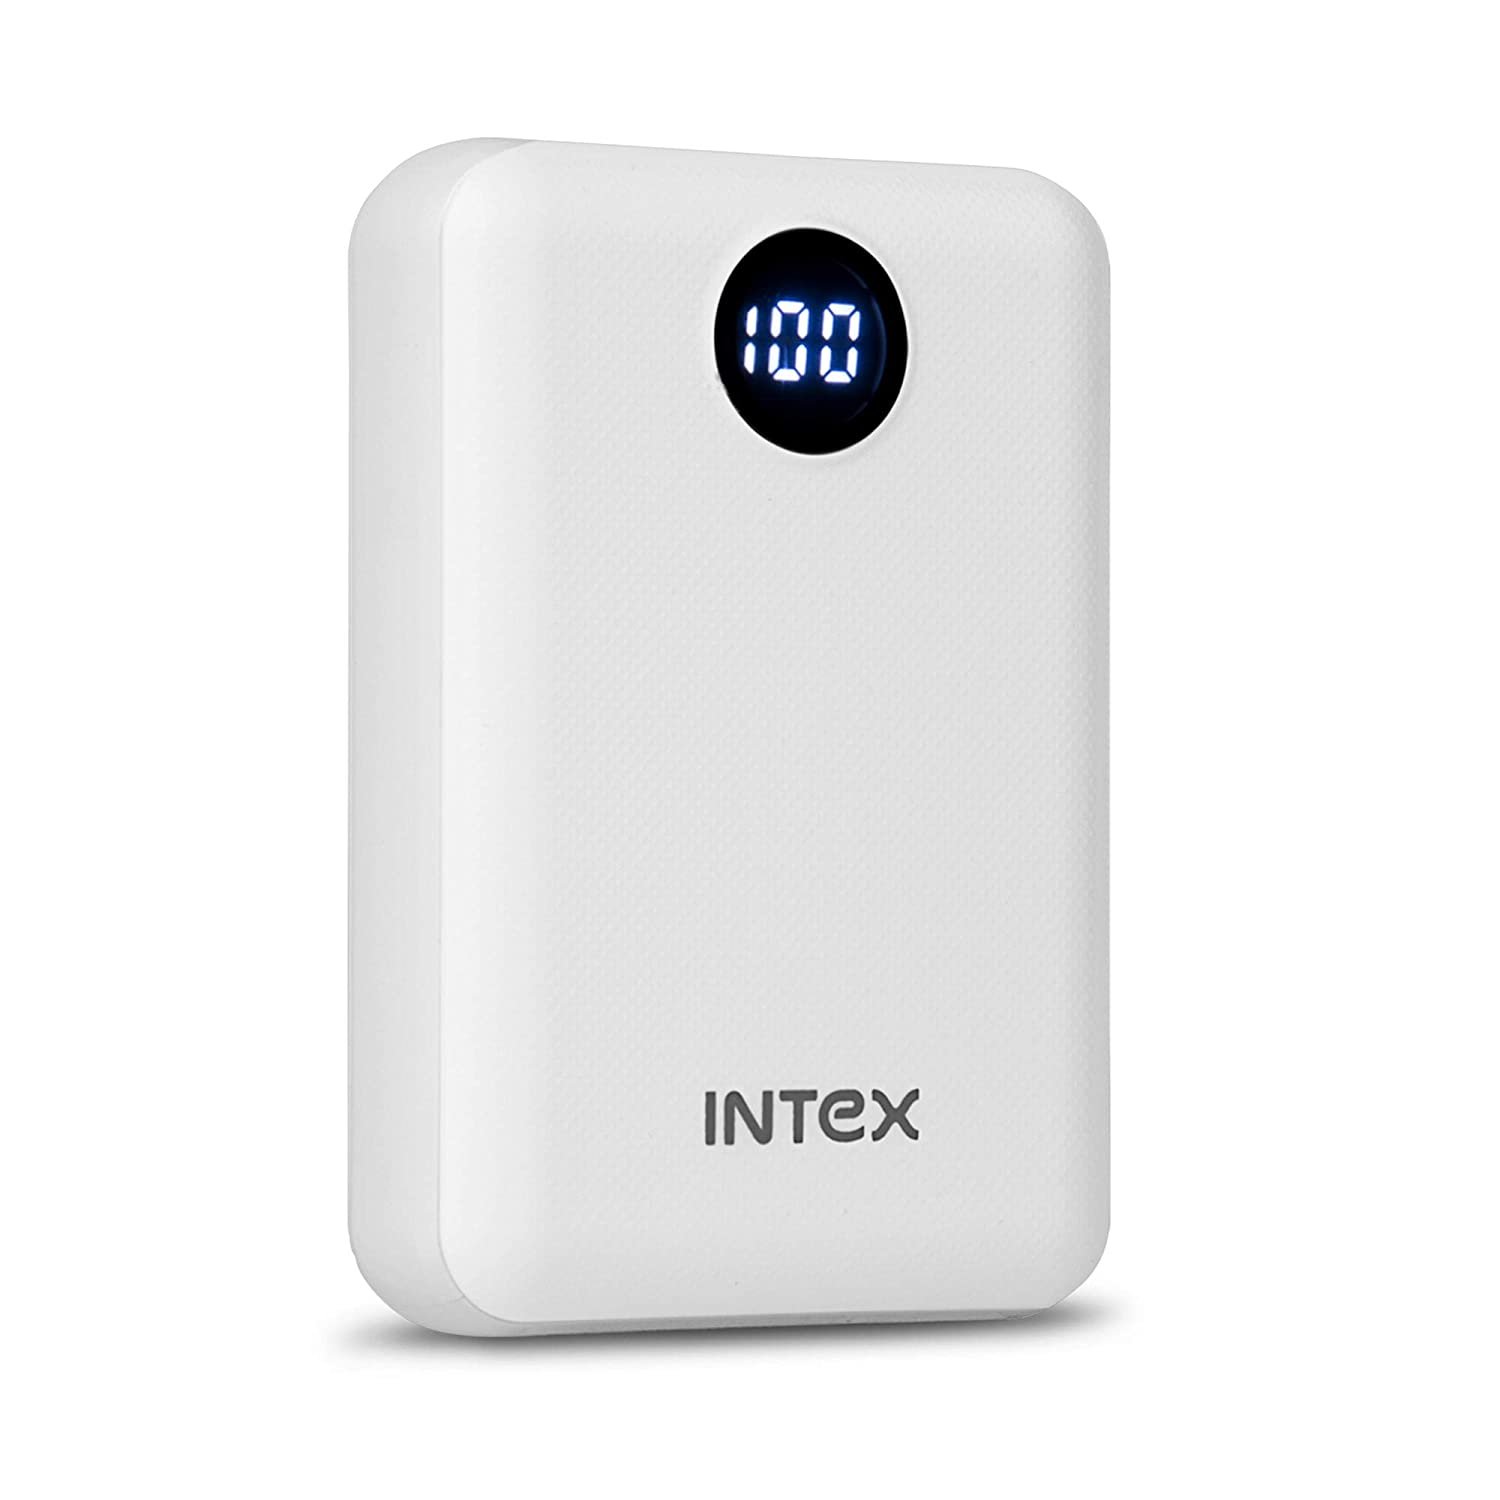 INTEX 10000mAH Li-Polymer Power Bank Mini